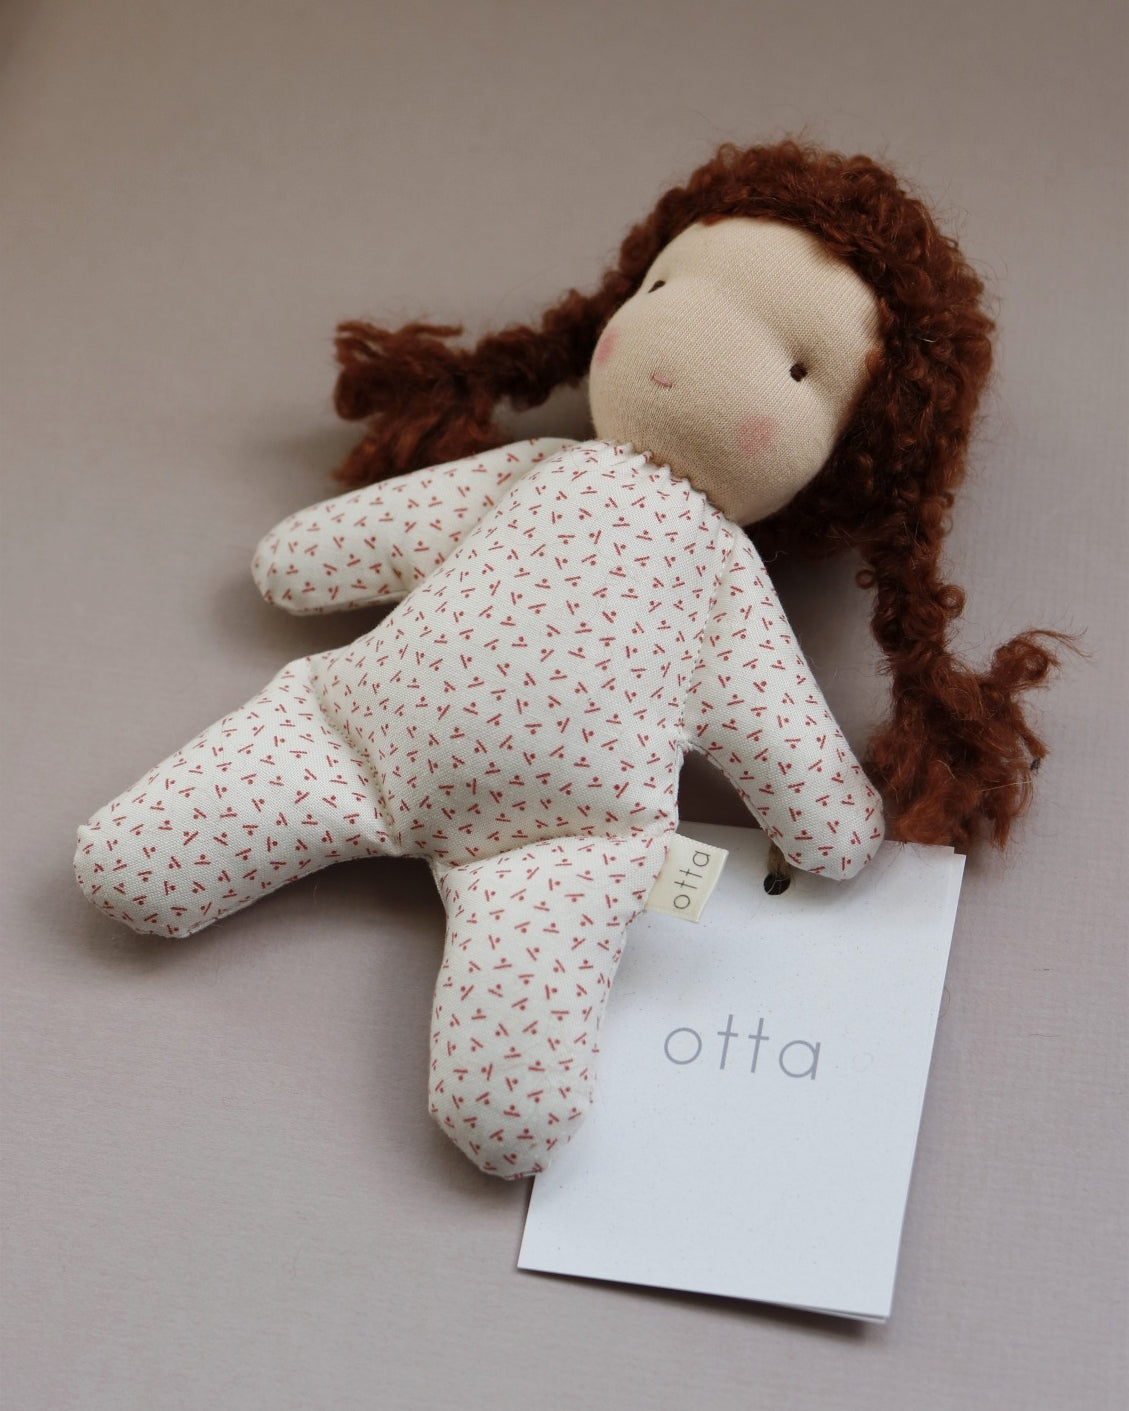 Otta Doll "Little Sister" 2